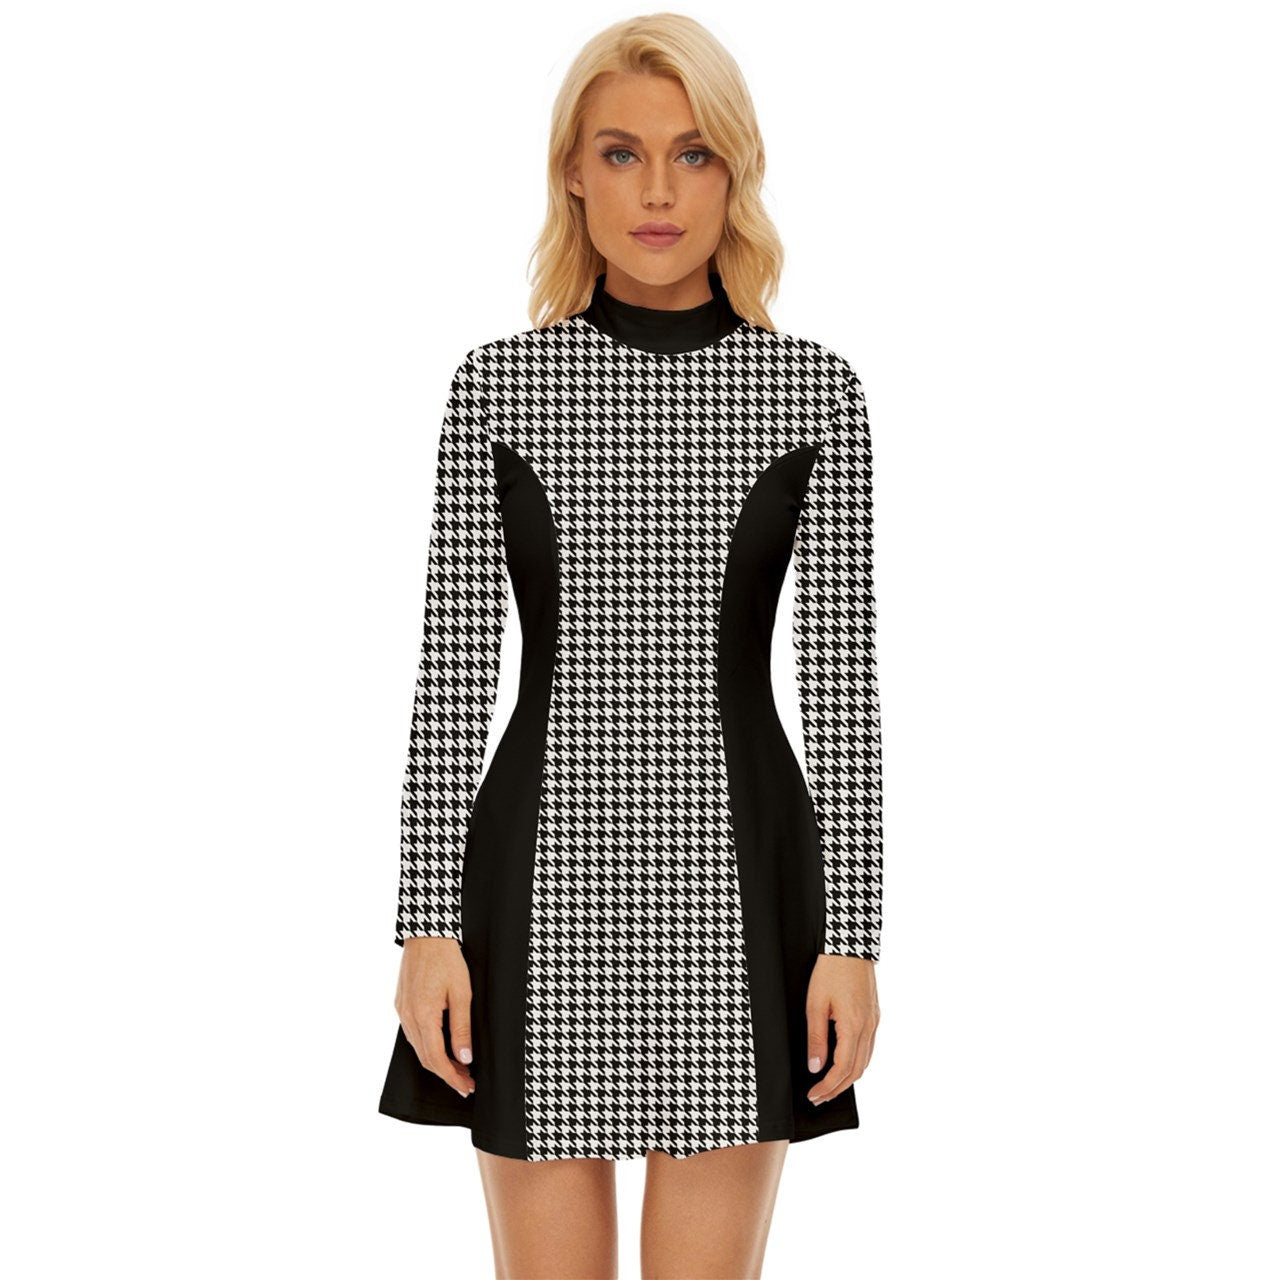 60er-Kleiderstil, Mod-Kleid, schwarzes Mod-Kleid, schwarzes Hahnentritt-Kleid, GOGO-Kleid, Kleid im 60er-Jahre-Stil, 60er-Minikleid, Retro-Kleid